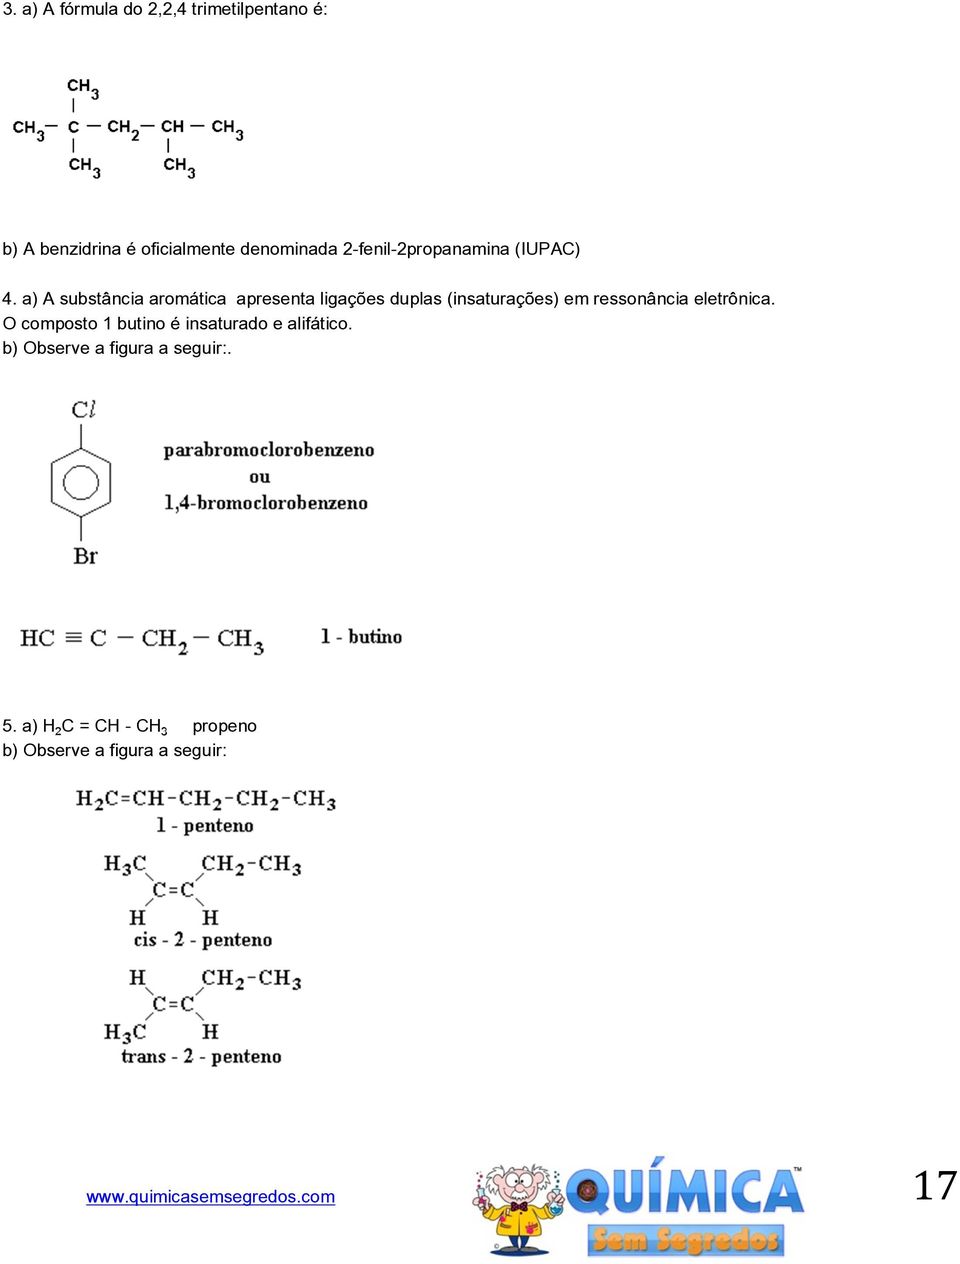 a) A substância aromática apresenta ligações duplas (insaturações) em ressonância